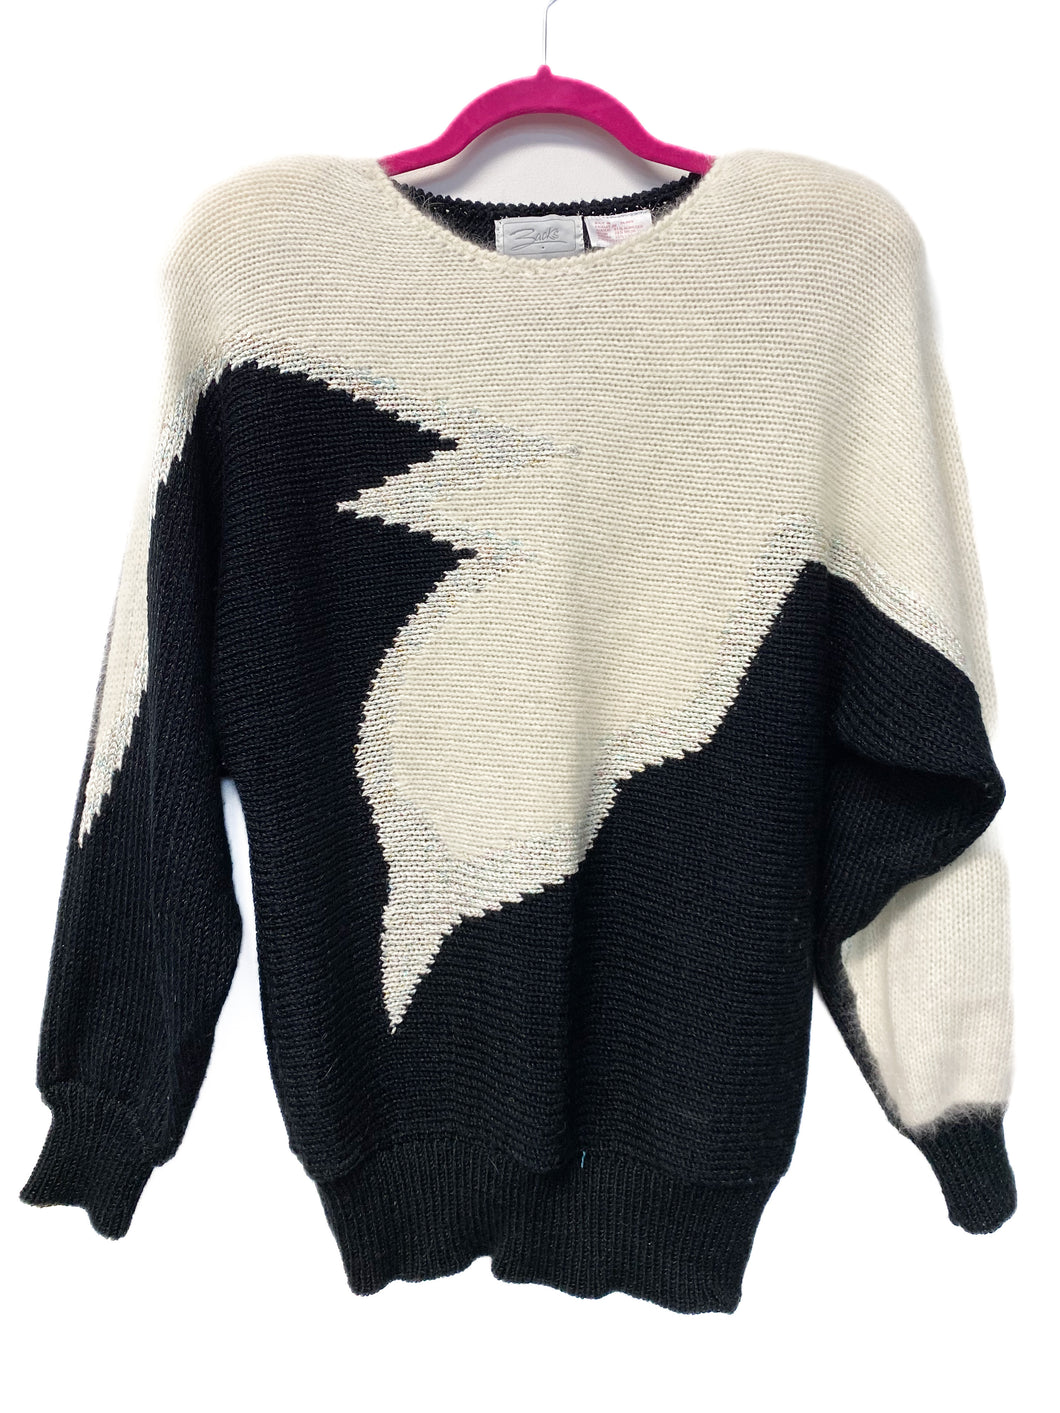 80's Zacks Sweater (S)